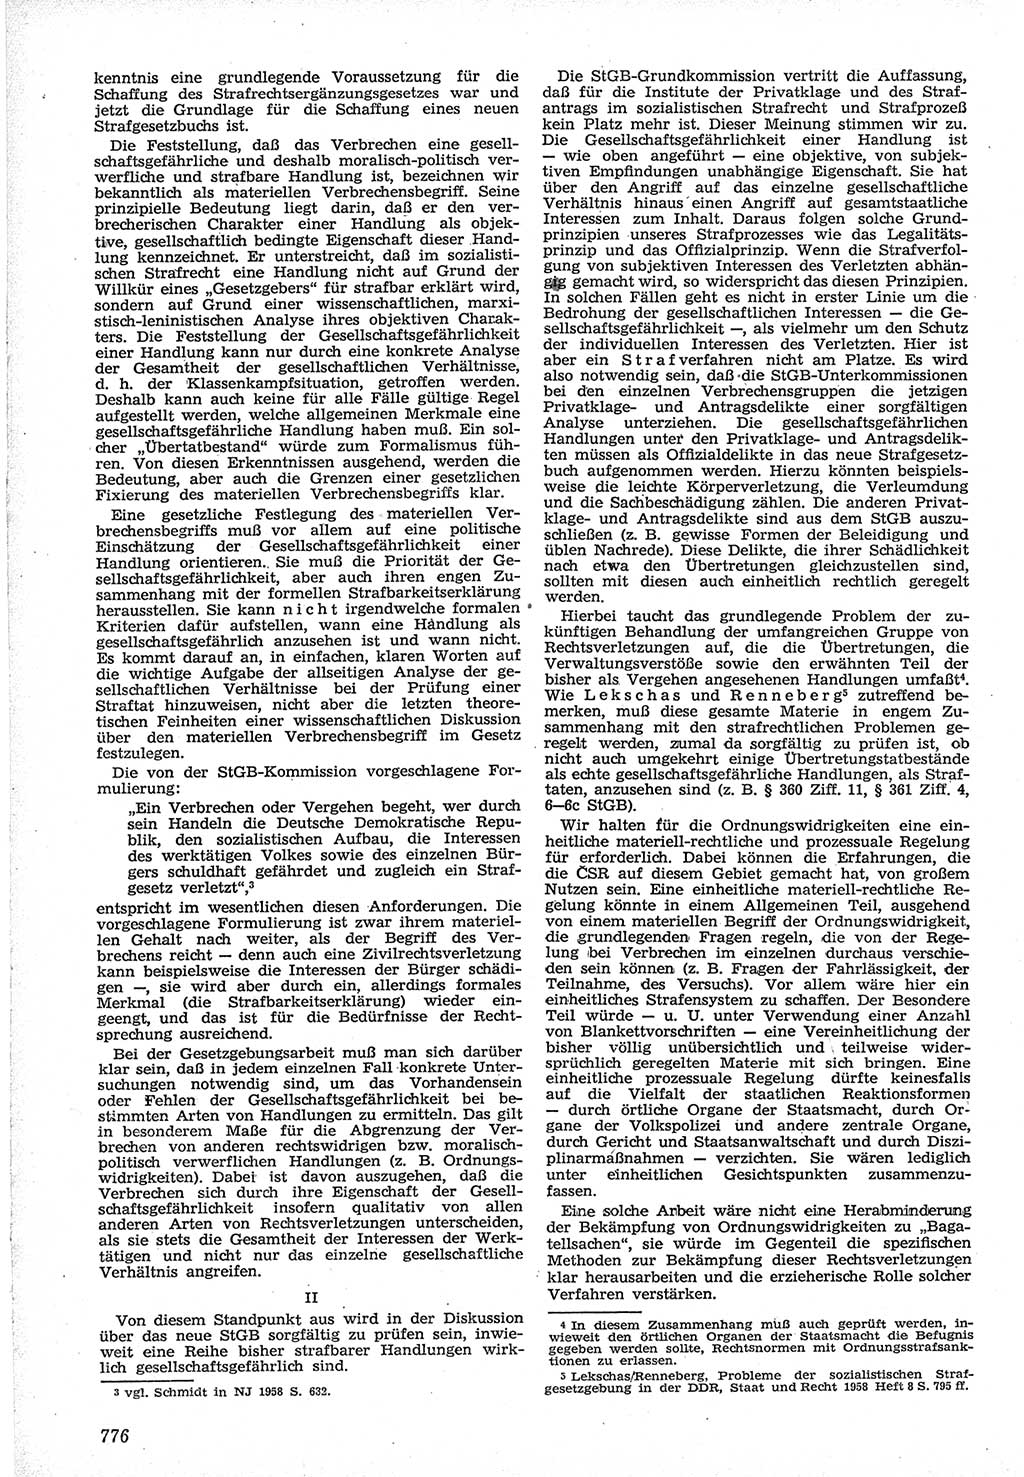 Neue Justiz (NJ), Zeitschrift für Recht und Rechtswissenschaft [Deutsche Demokratische Republik (DDR)], 12. Jahrgang 1958, Seite 776 (NJ DDR 1958, S. 776)